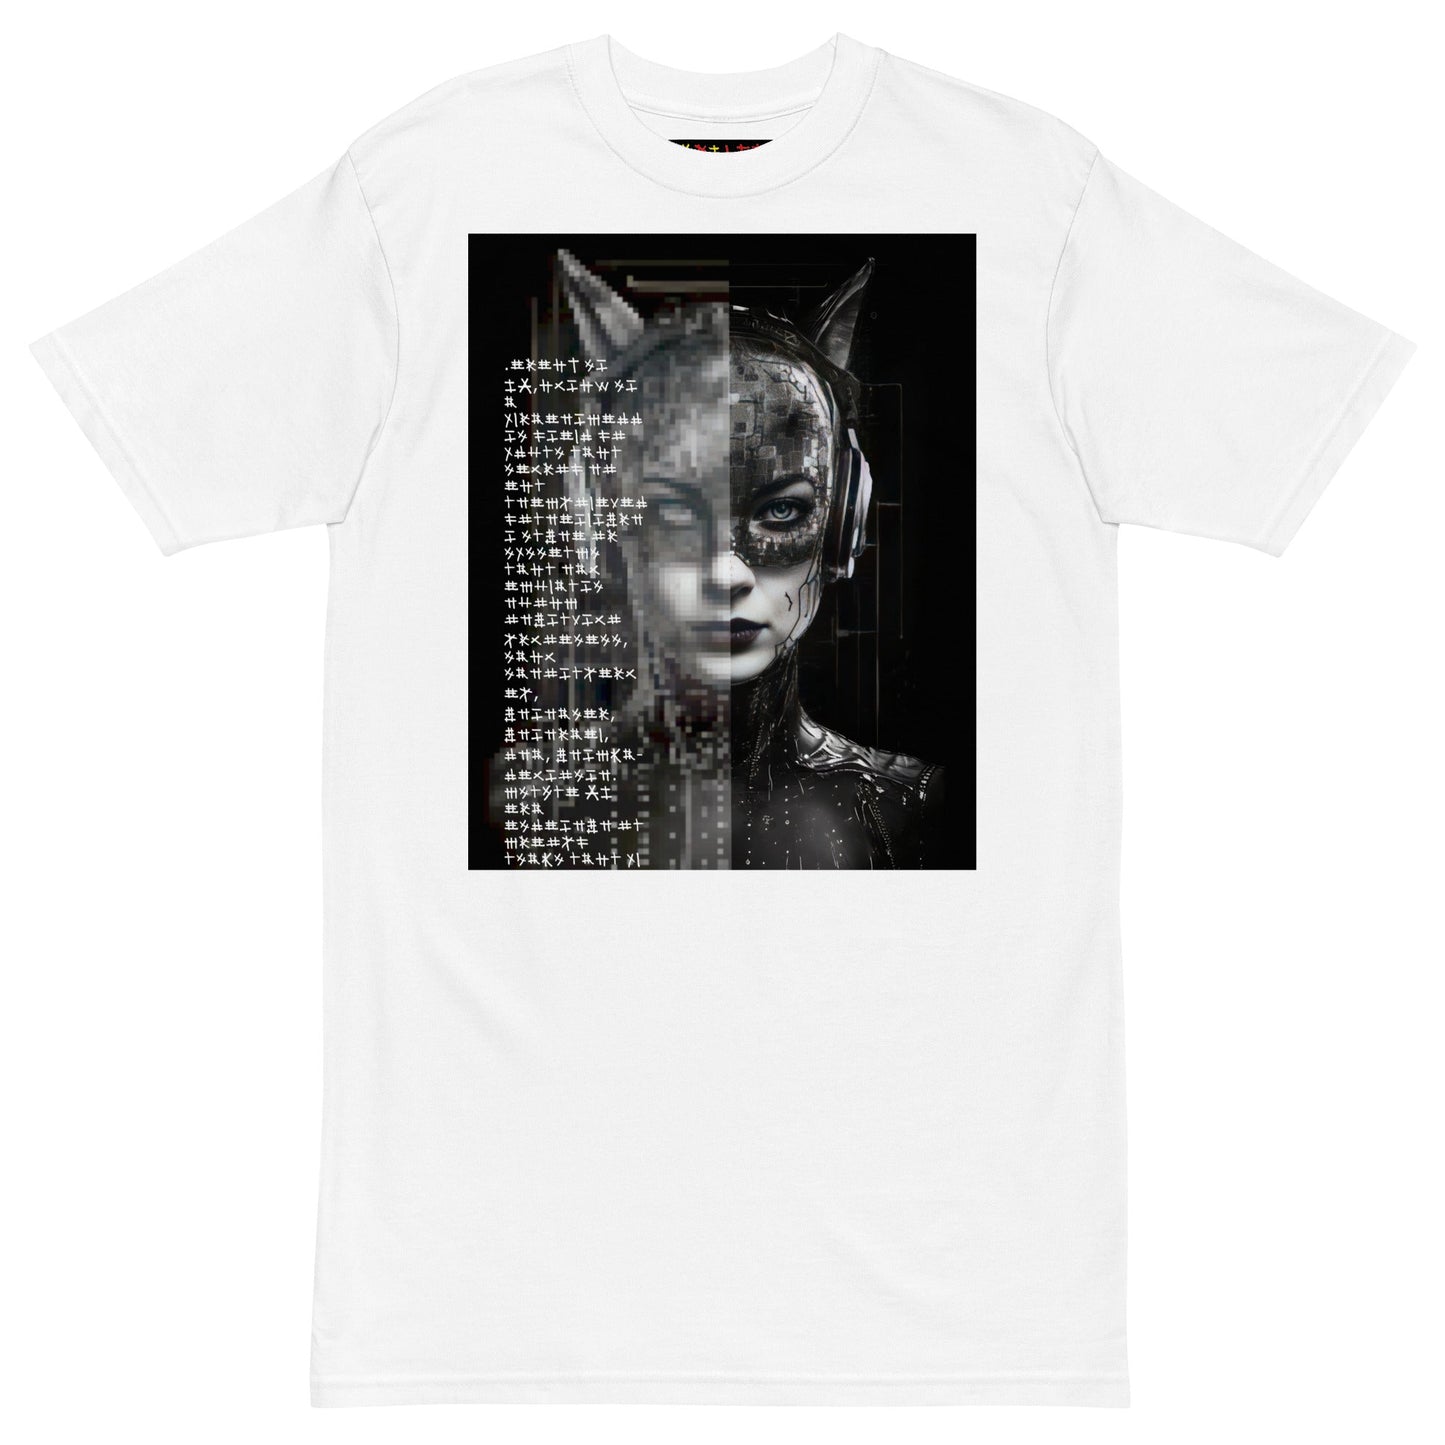 CAT WOMAN 2050 Premium Heavyweight T-Shirt - Rarileto